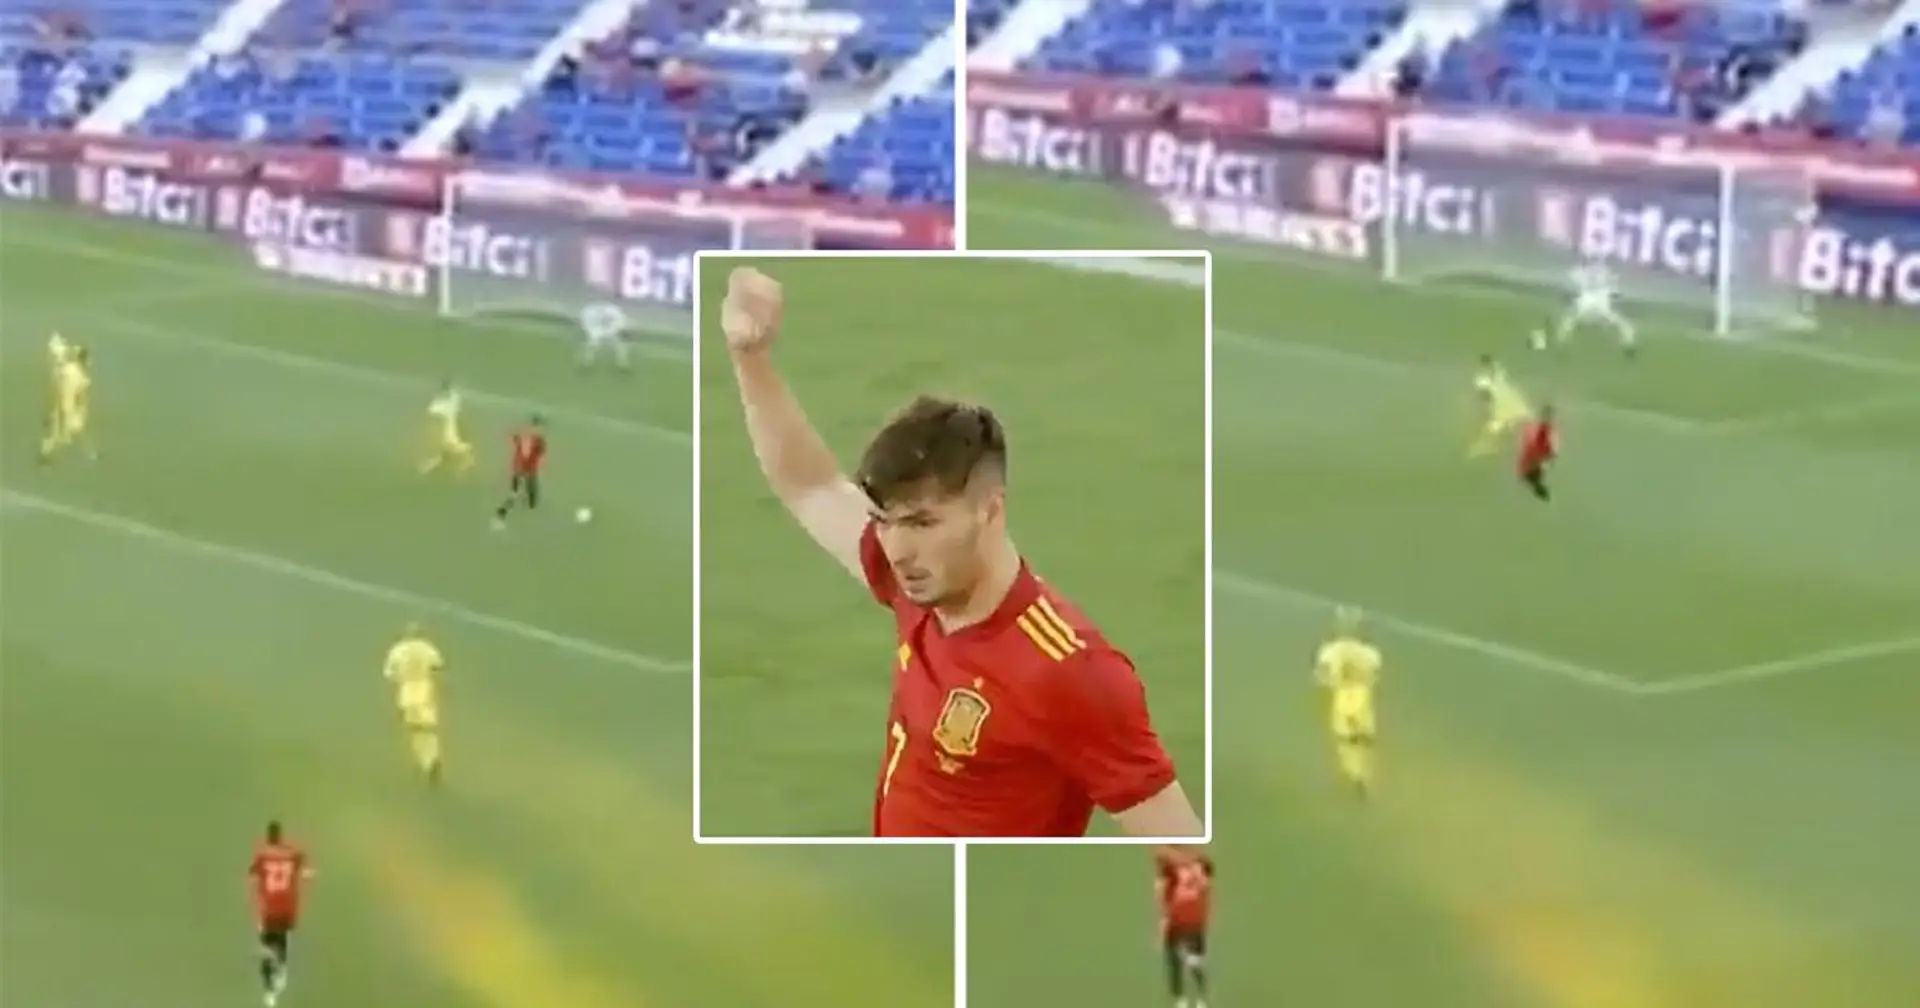 Brahim Diaz fait ses débuts en Espagne en marquant un très beau but (video)